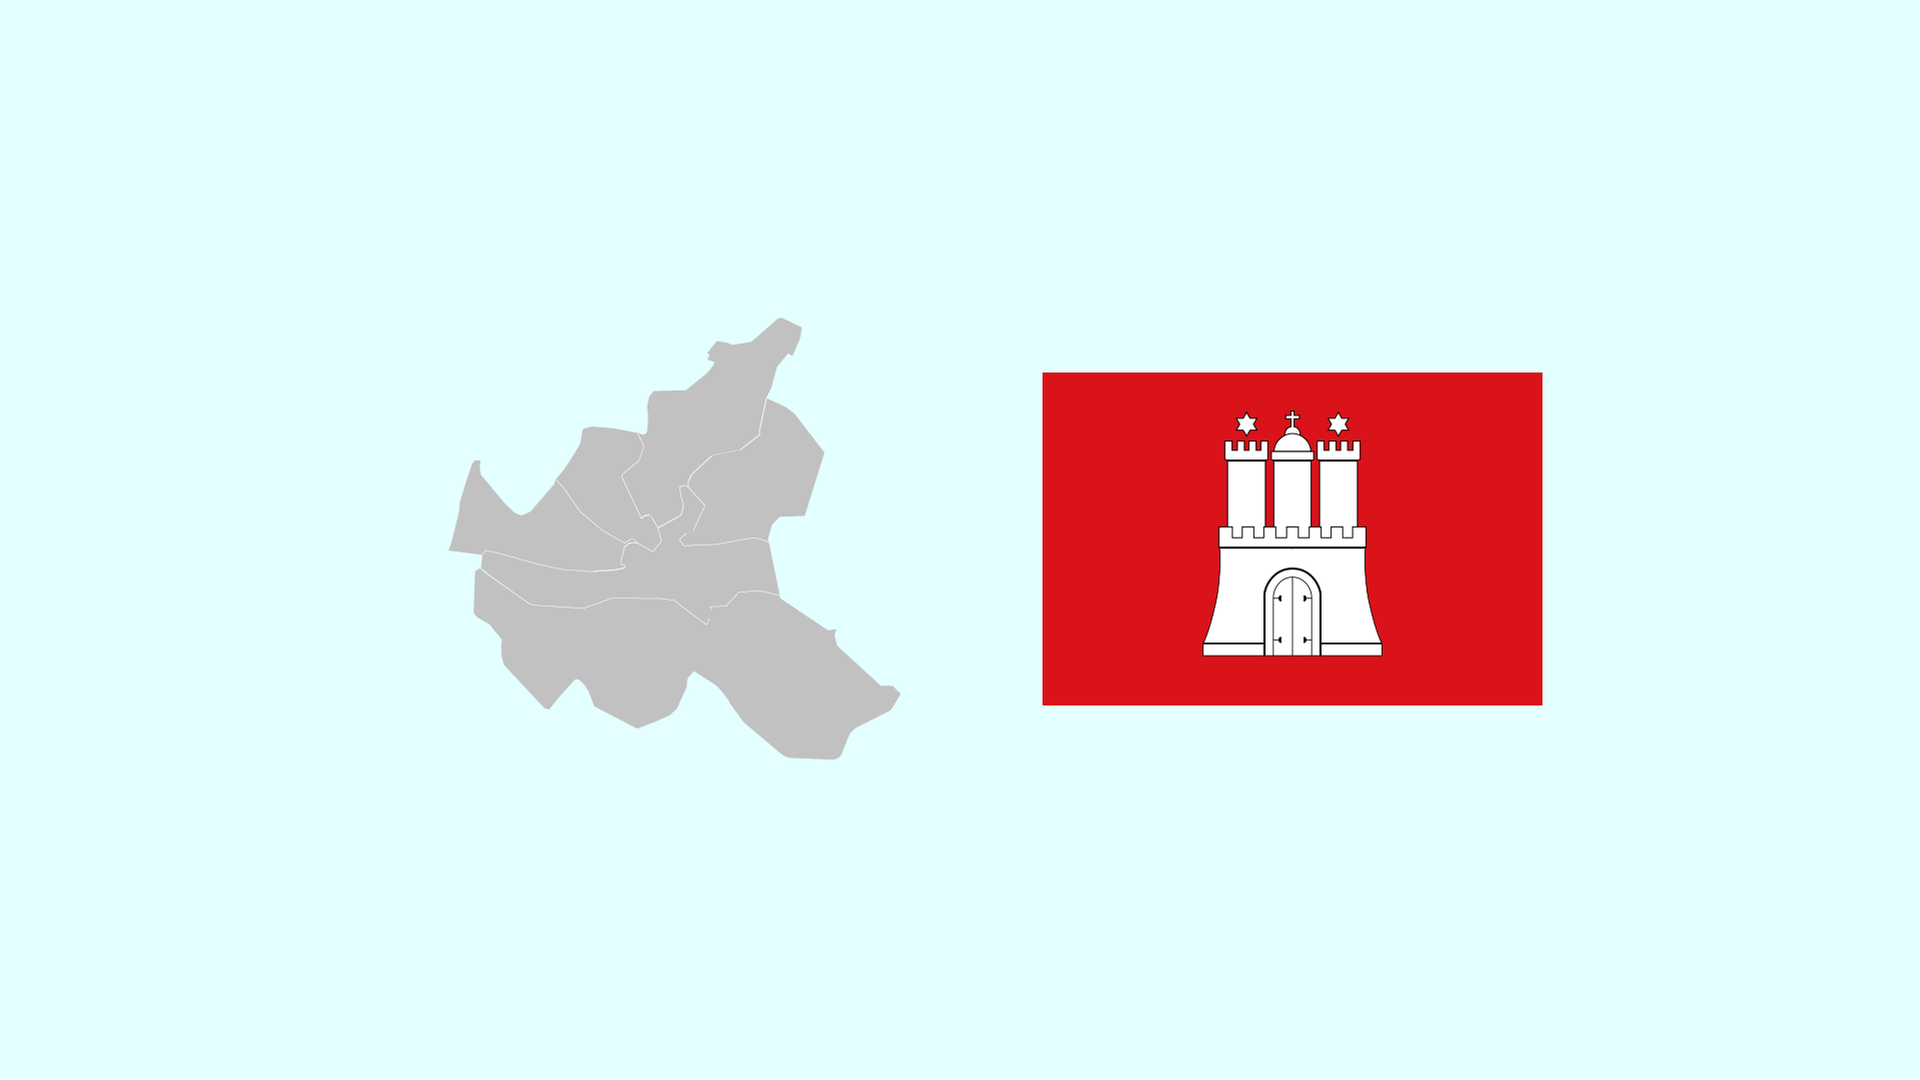 Wahlkreise und Flagge von Hamburg